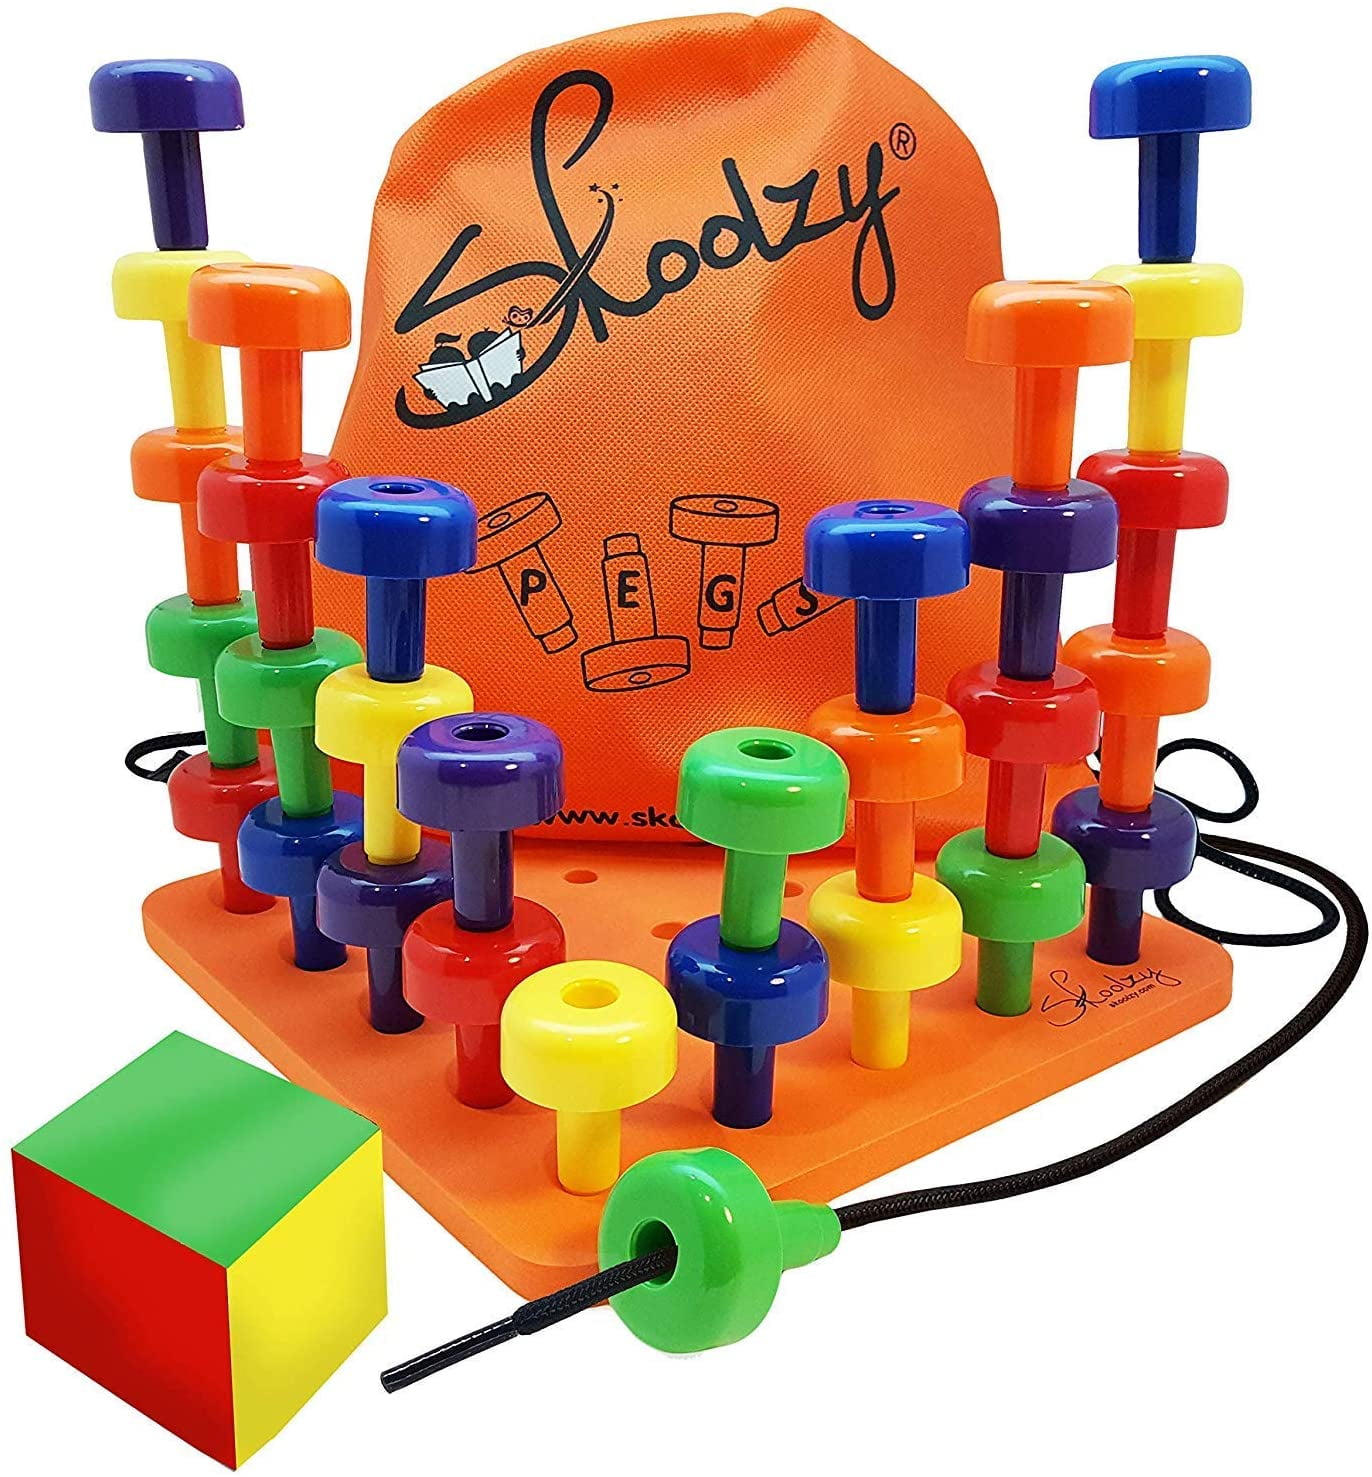 Lil HOUSE Kids Activity Board Busy Board Busyboard Activity Board  Montessori Toy Activity Toy Geoboard Geo Board Pegboard Peg Board 